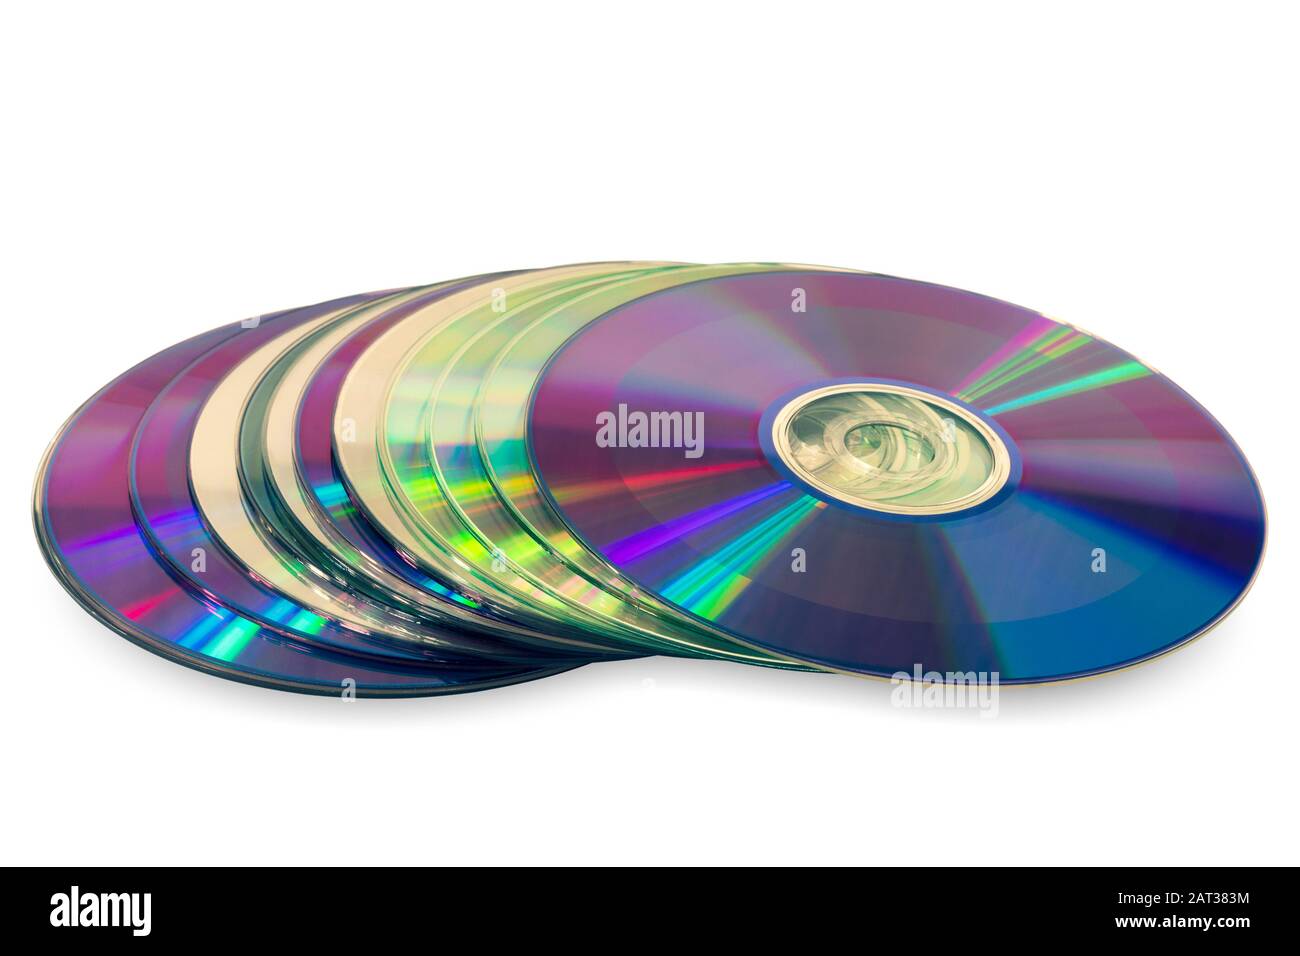 Primo piano di una pila di compact disc (CD/DVD). Isolato su sfondo bianco Foto Stock